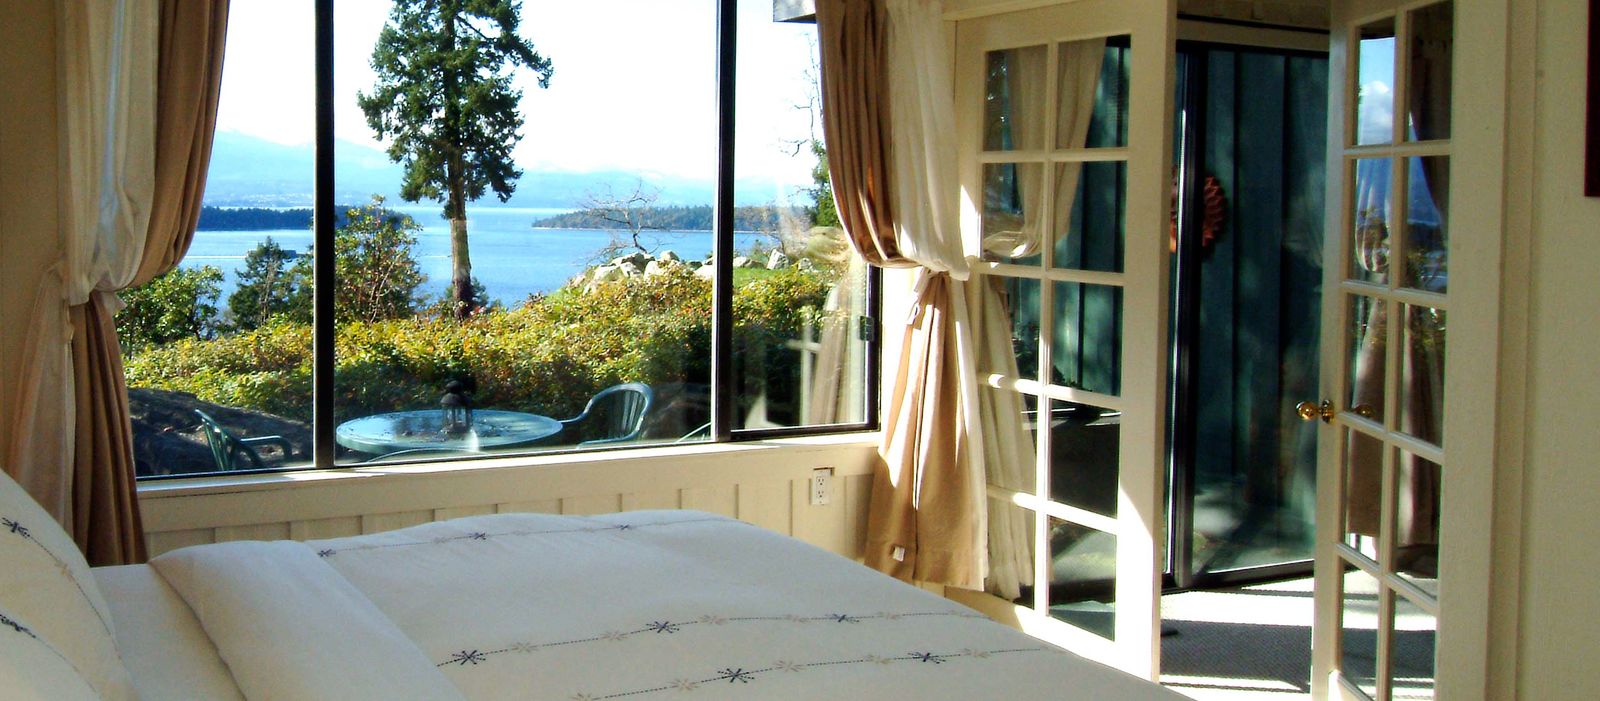 Quarrystone House Bed and Breakfast, Einzelbettzimmer mit Sicht auf die Bucht